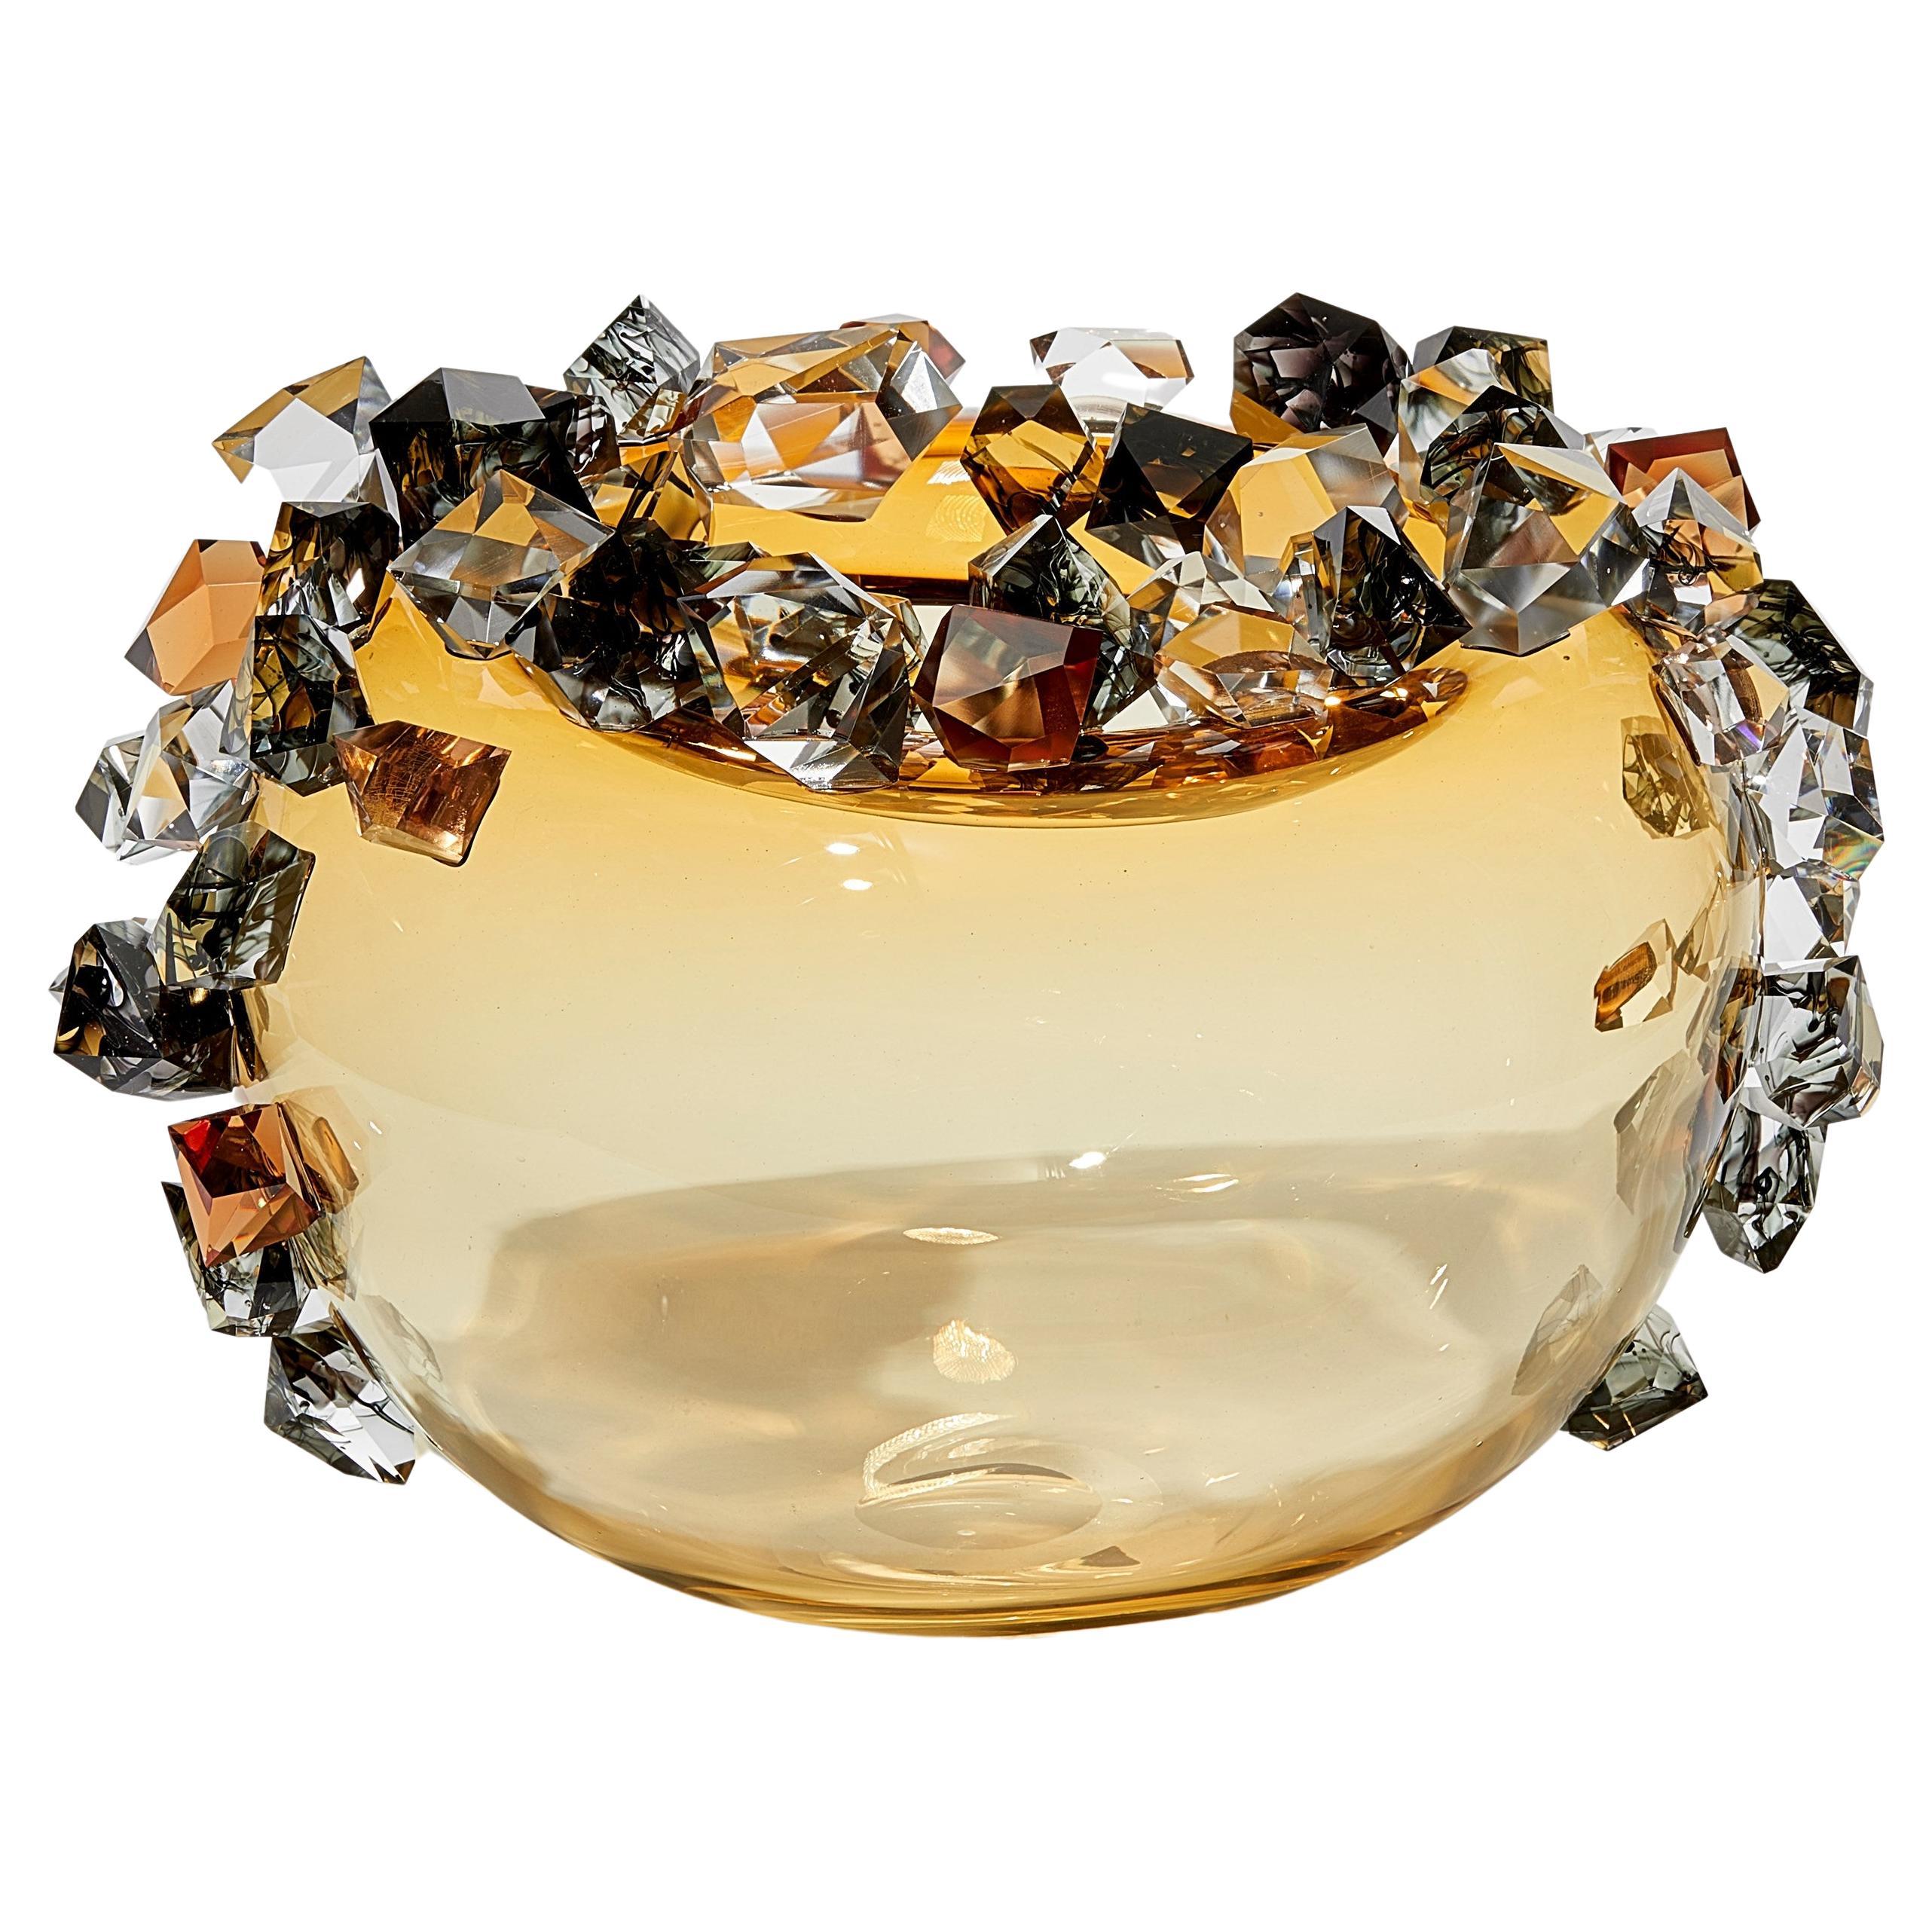 La diffusion de cristaux dans l'ambre, sculpture en verre ornée de cristaux par Hanne Enemark